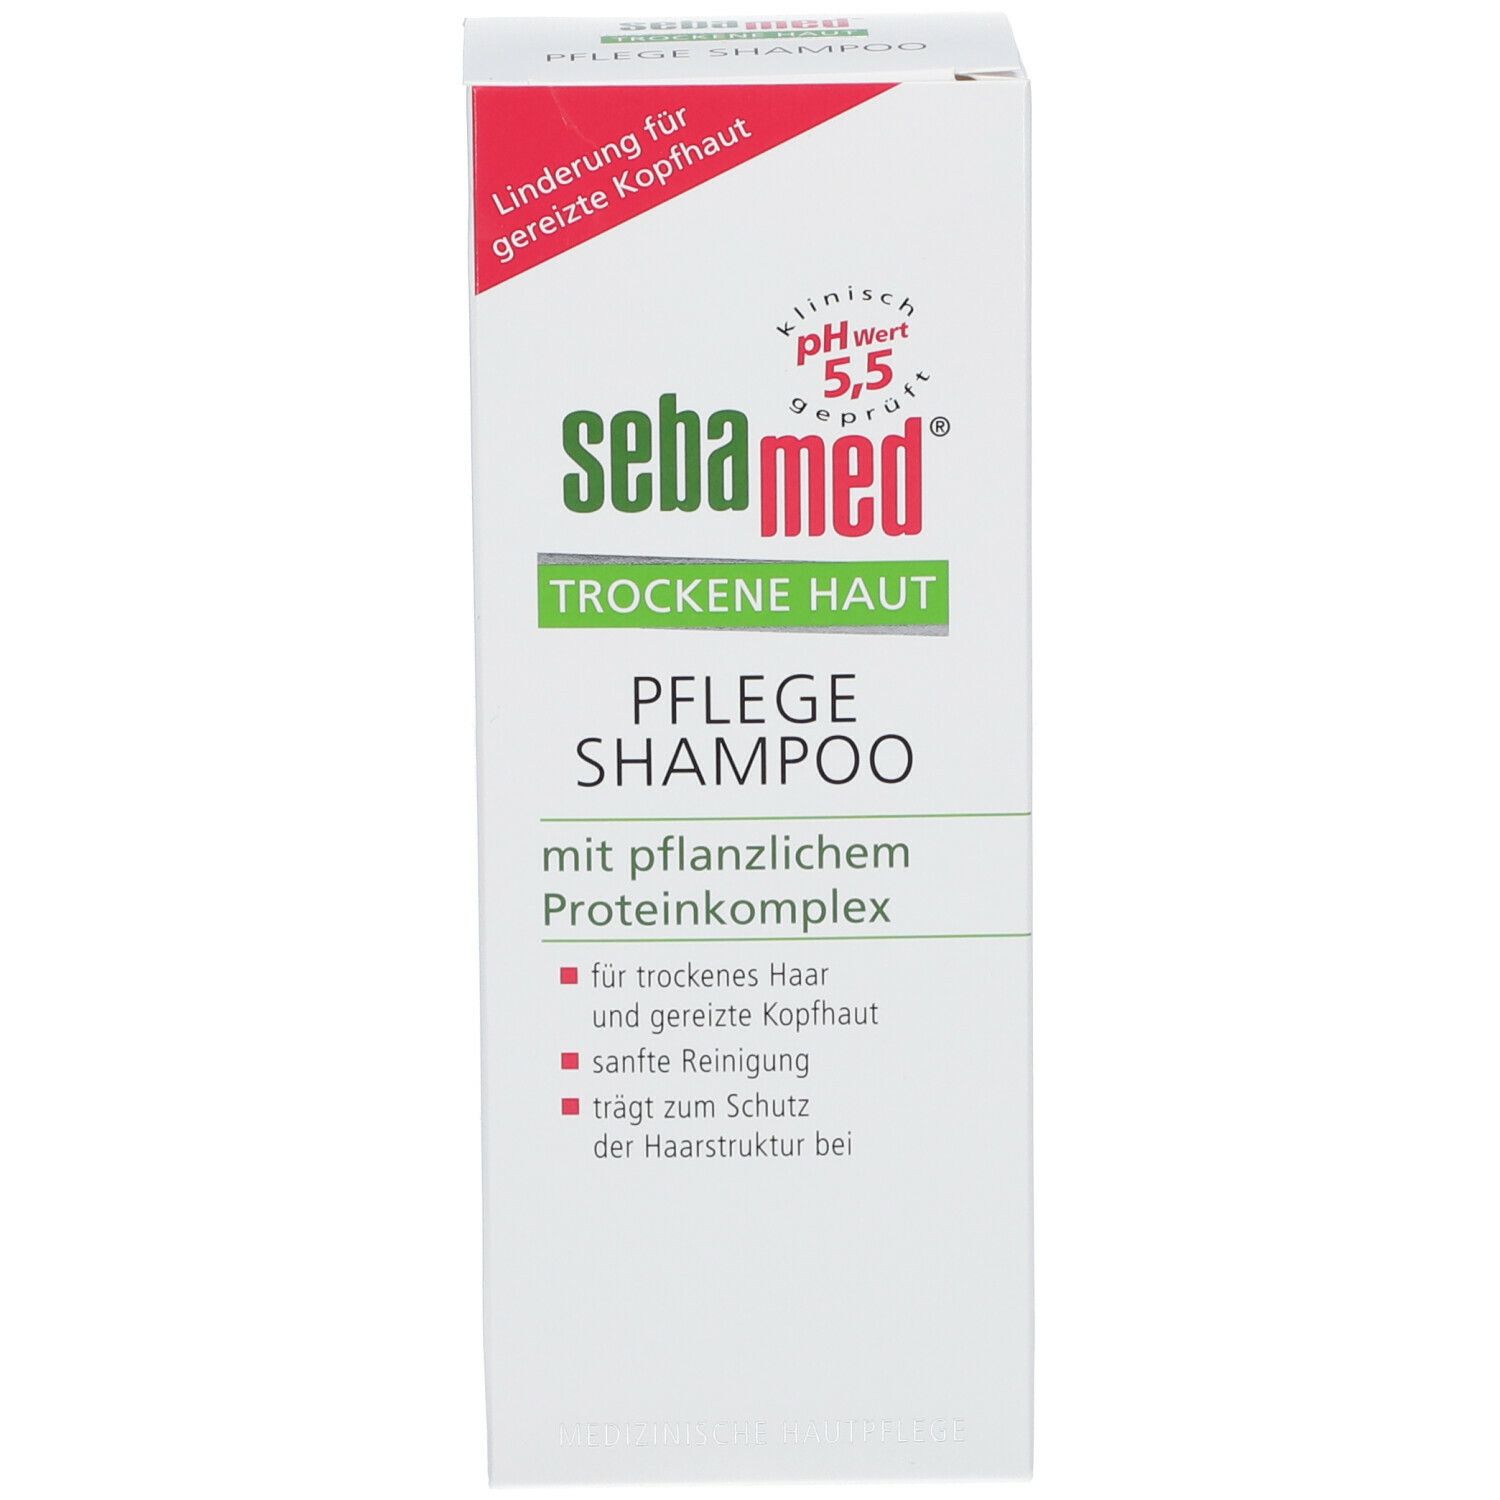 sebamed® Trockene Haut Pflege Shampoo